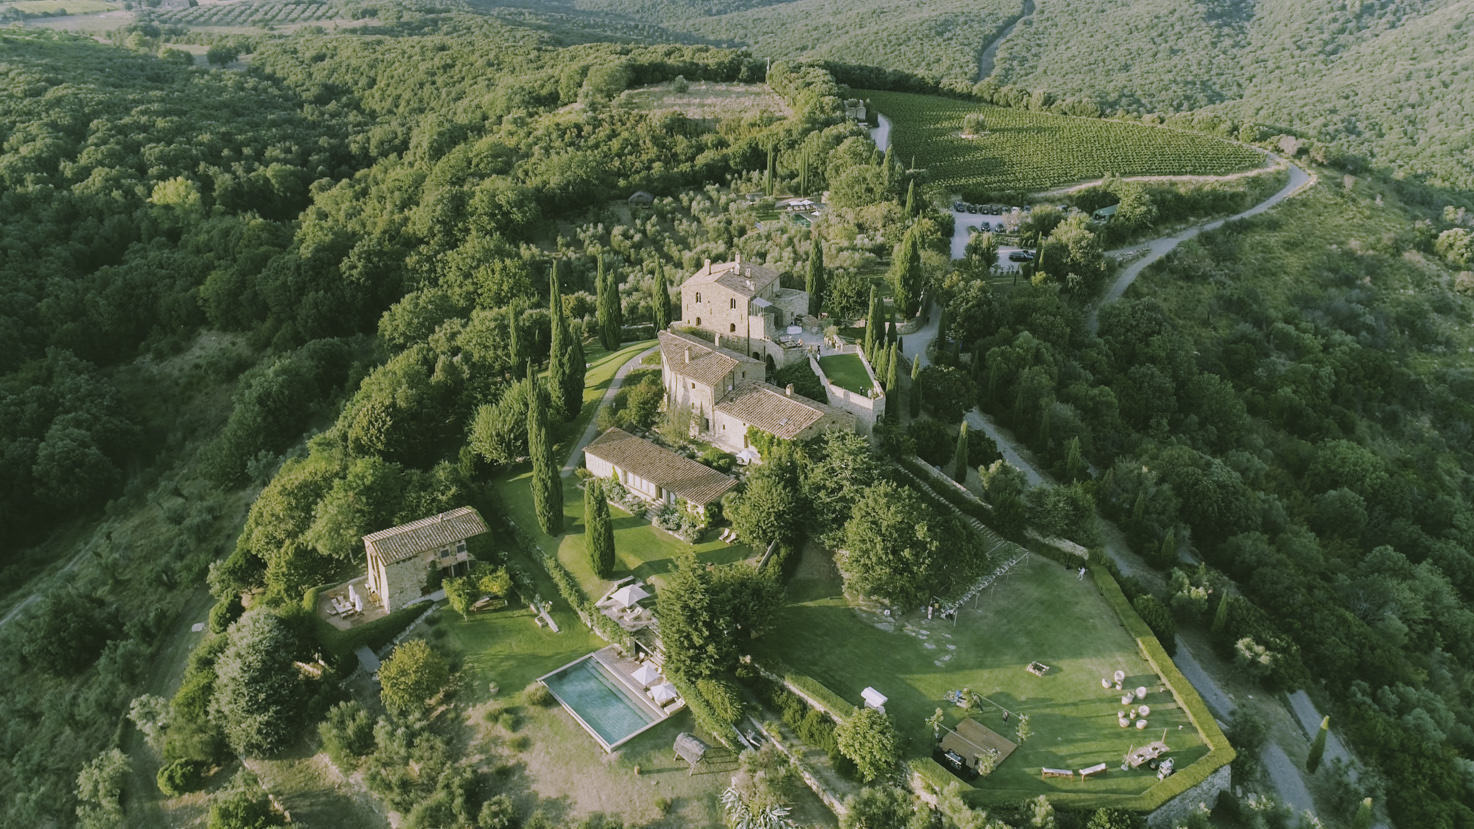 Aerial view of Castello di Vicarello